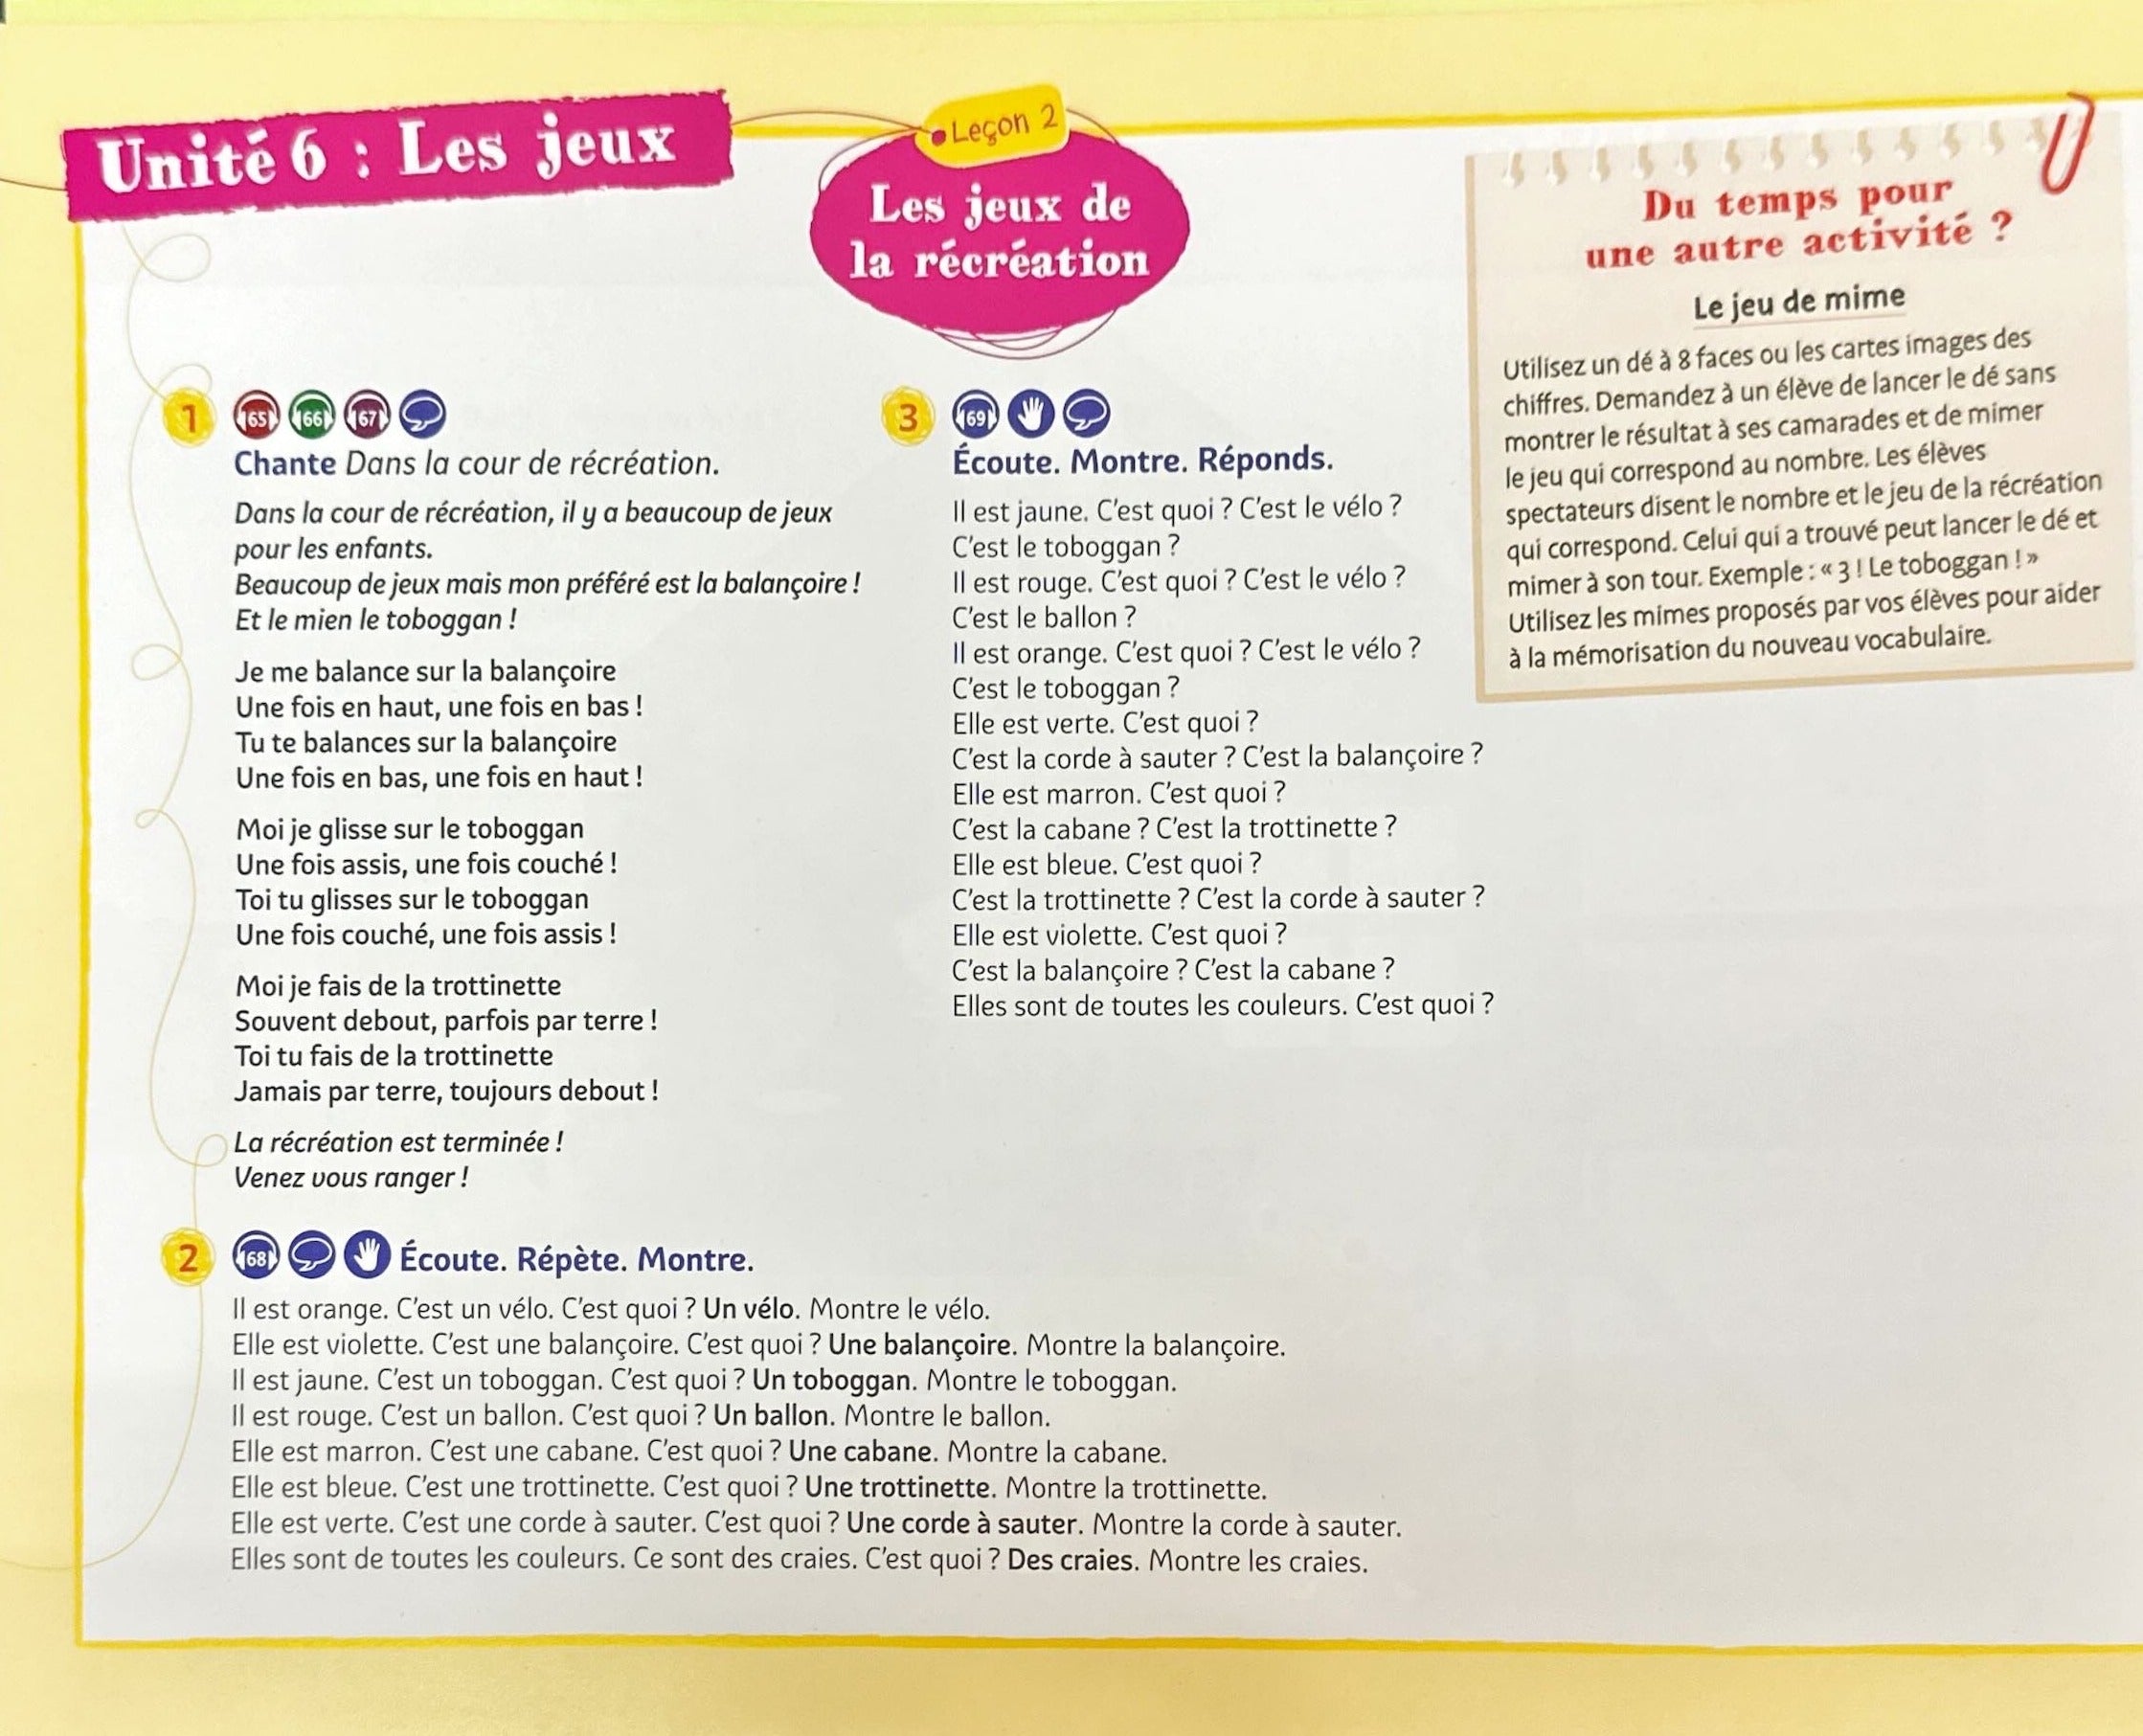 原版進口 Hachette 經典兒童法文教材 LES PETITS LOUSTICS 2 : CAHIER D'ACTIVITES + CD AUDIO 作業本+CD